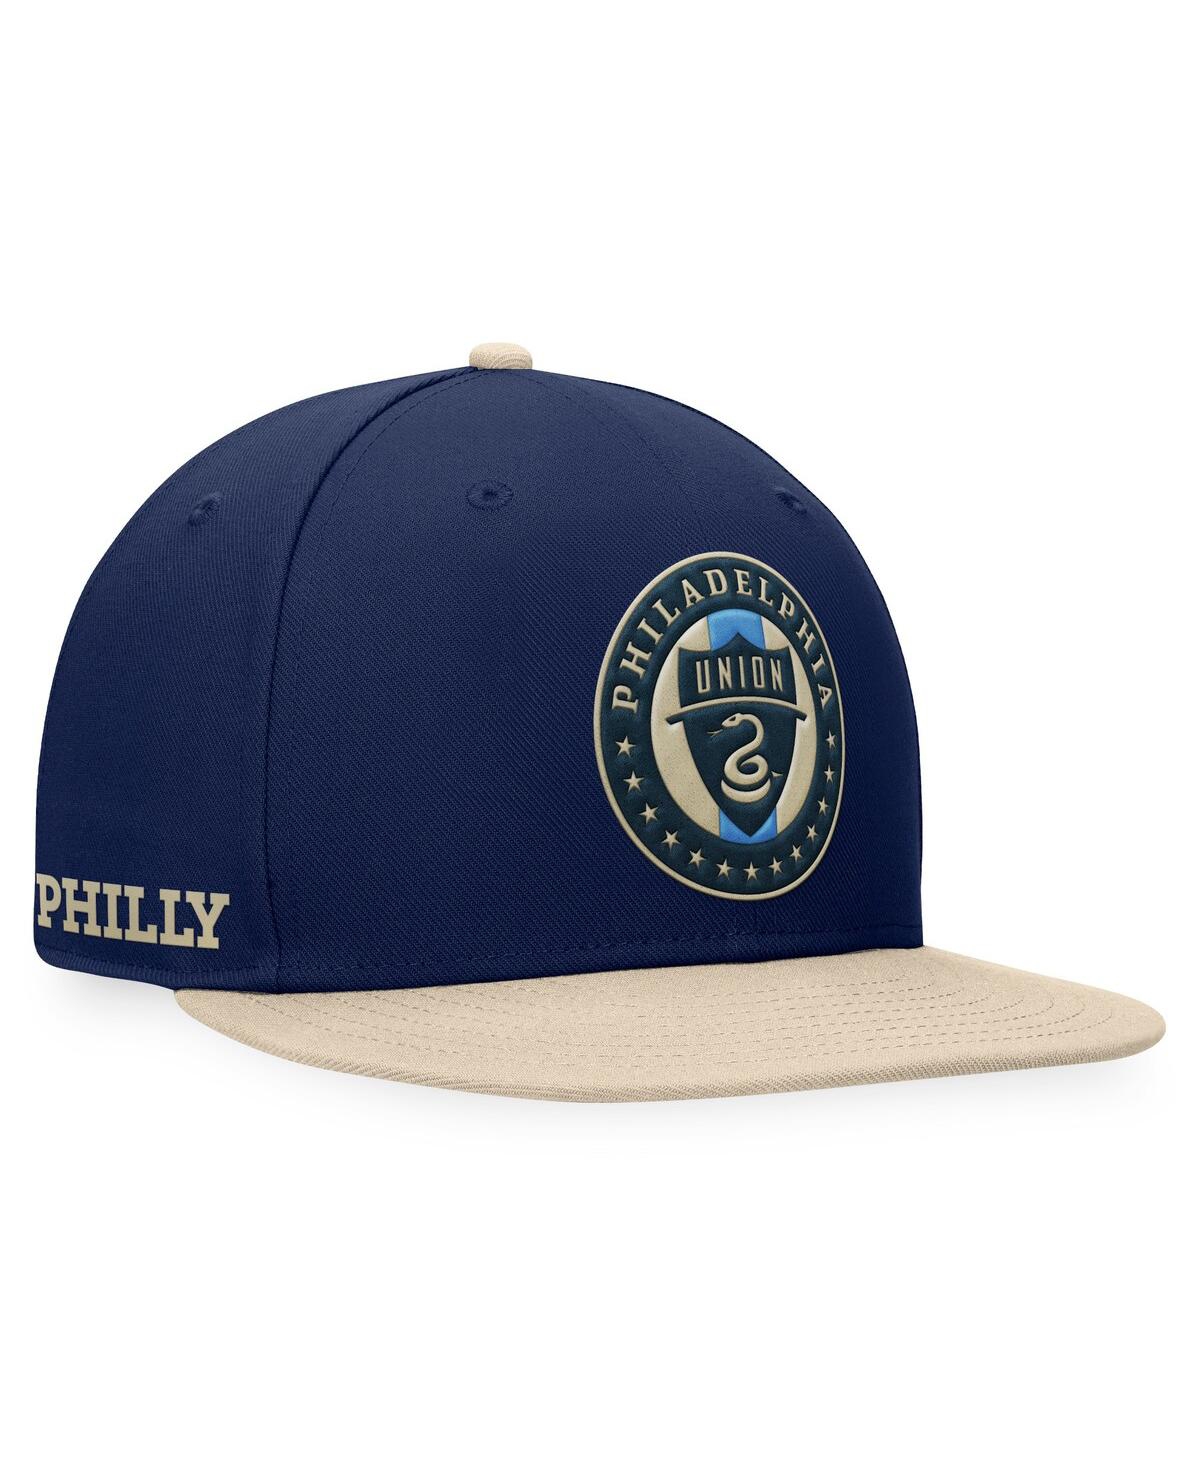 Branded Men's Navy/Gold Philadelphia Union Downtown Snapback Hat - A Nvy/nat